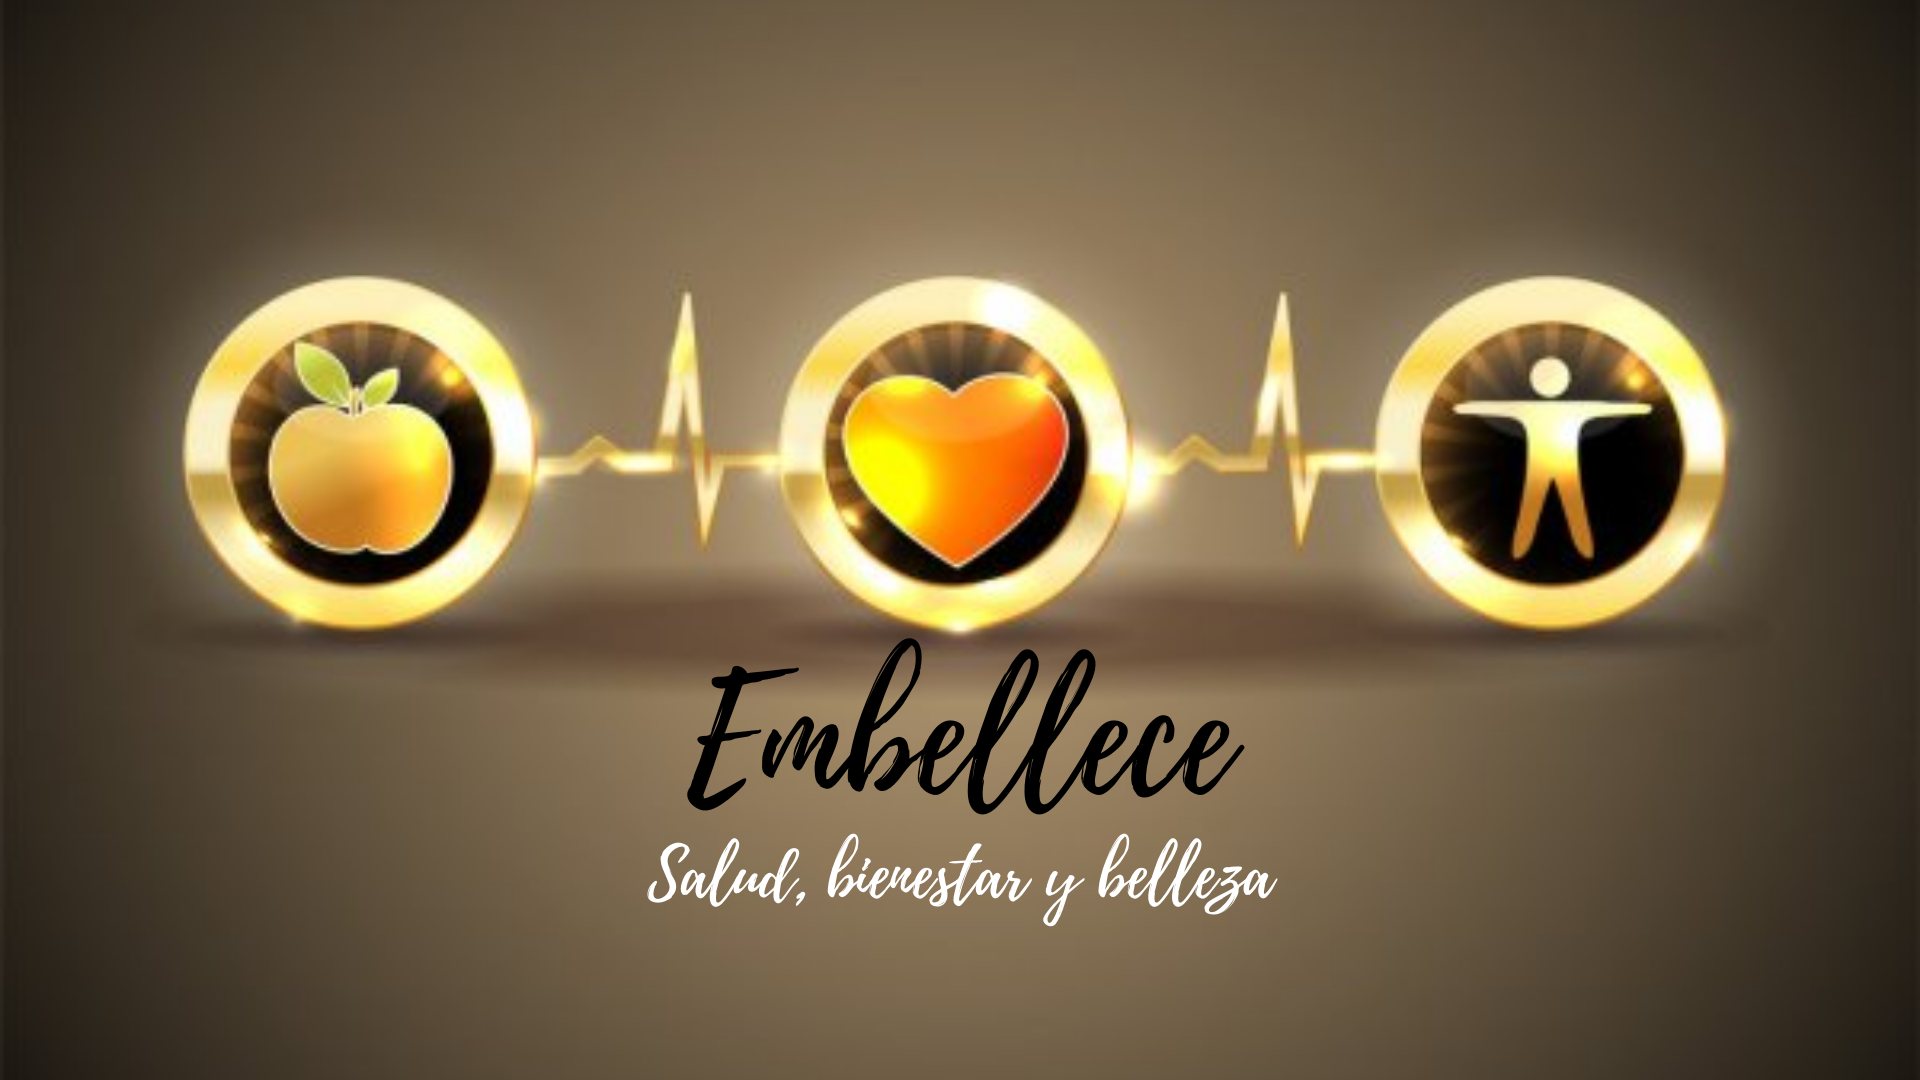 Embellece